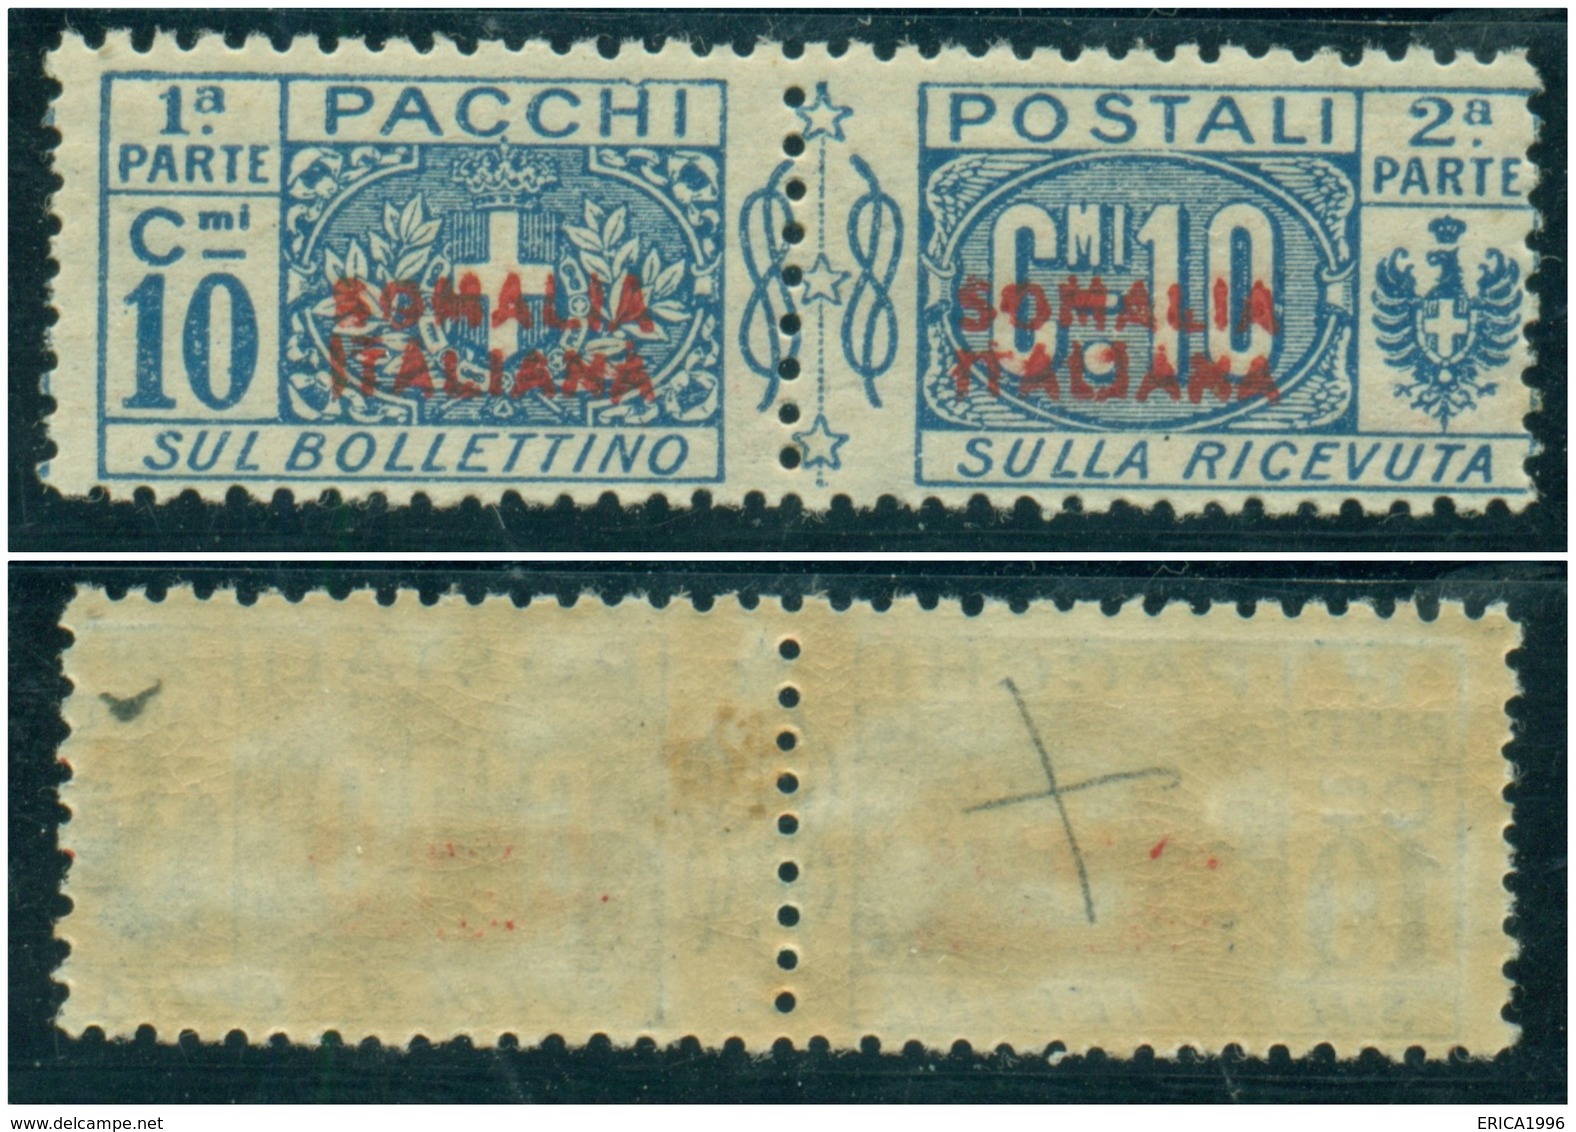 Z1350 ITALIA COLONIE Somalia Italiana 1926 Pacchi Postali 10 C. MNH Sassone N. 31, Valore Catalogo € 110, Ottime Condiz. - Somalië